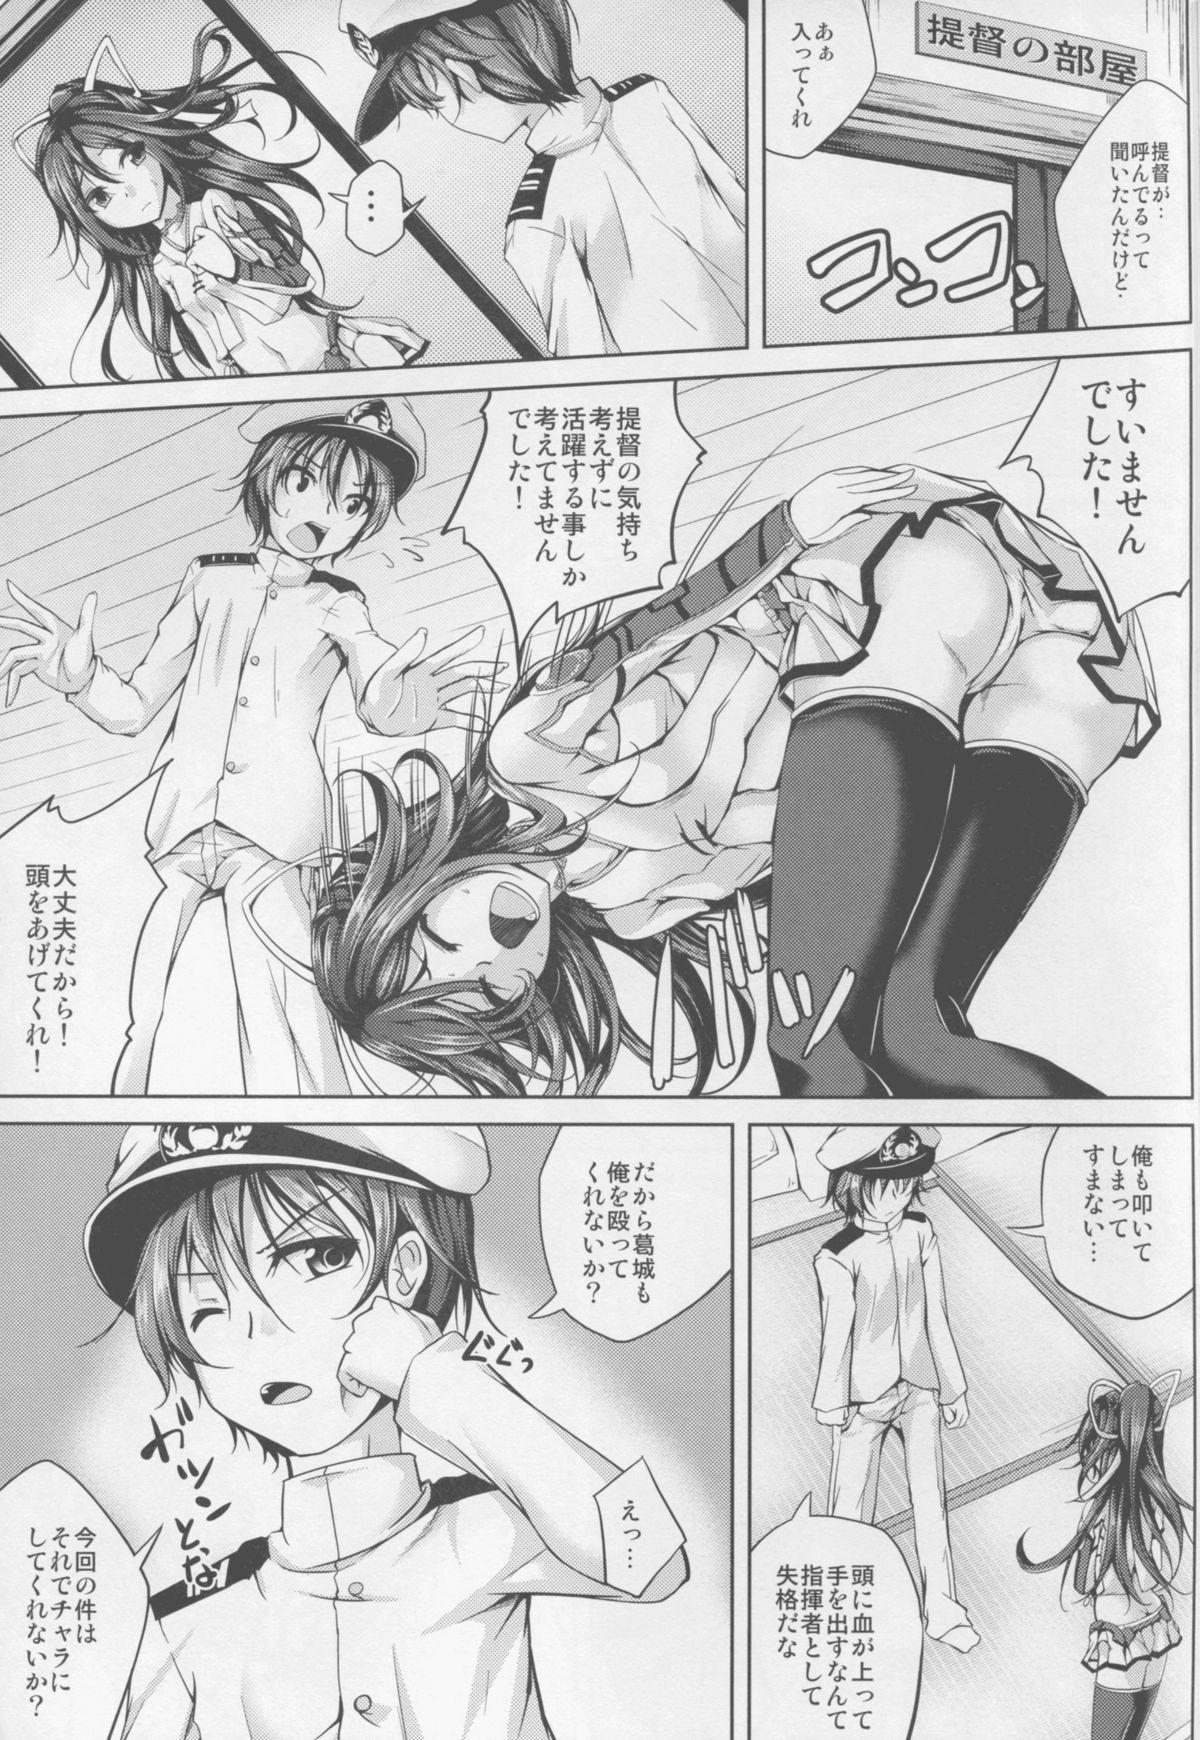 Dando Koiiro Moyou 13 - Kantai collection Milfporn - Page 9